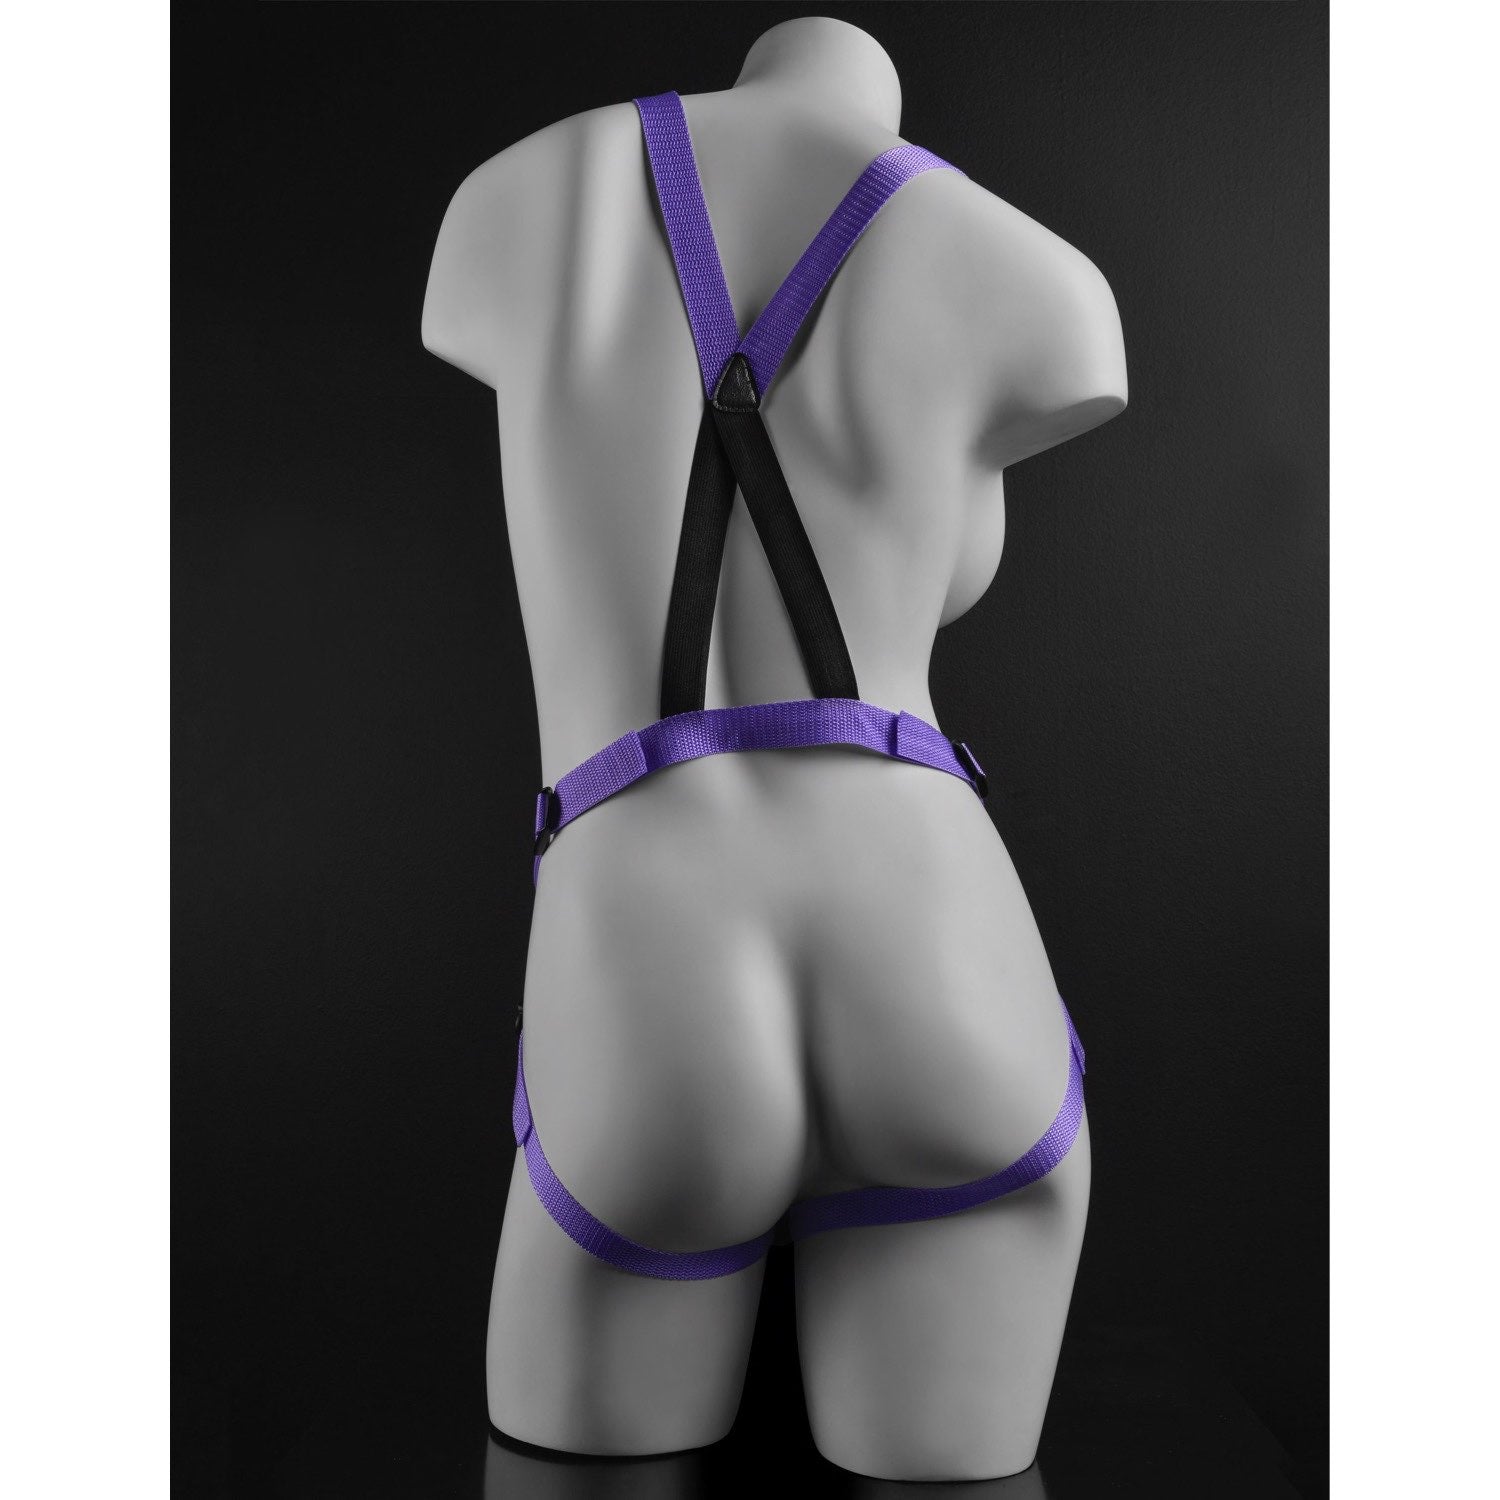 迪利奥 7 英寸绑带式吊带套装 - 紫色 17.8 厘米绑式带吊带 by Pipedream